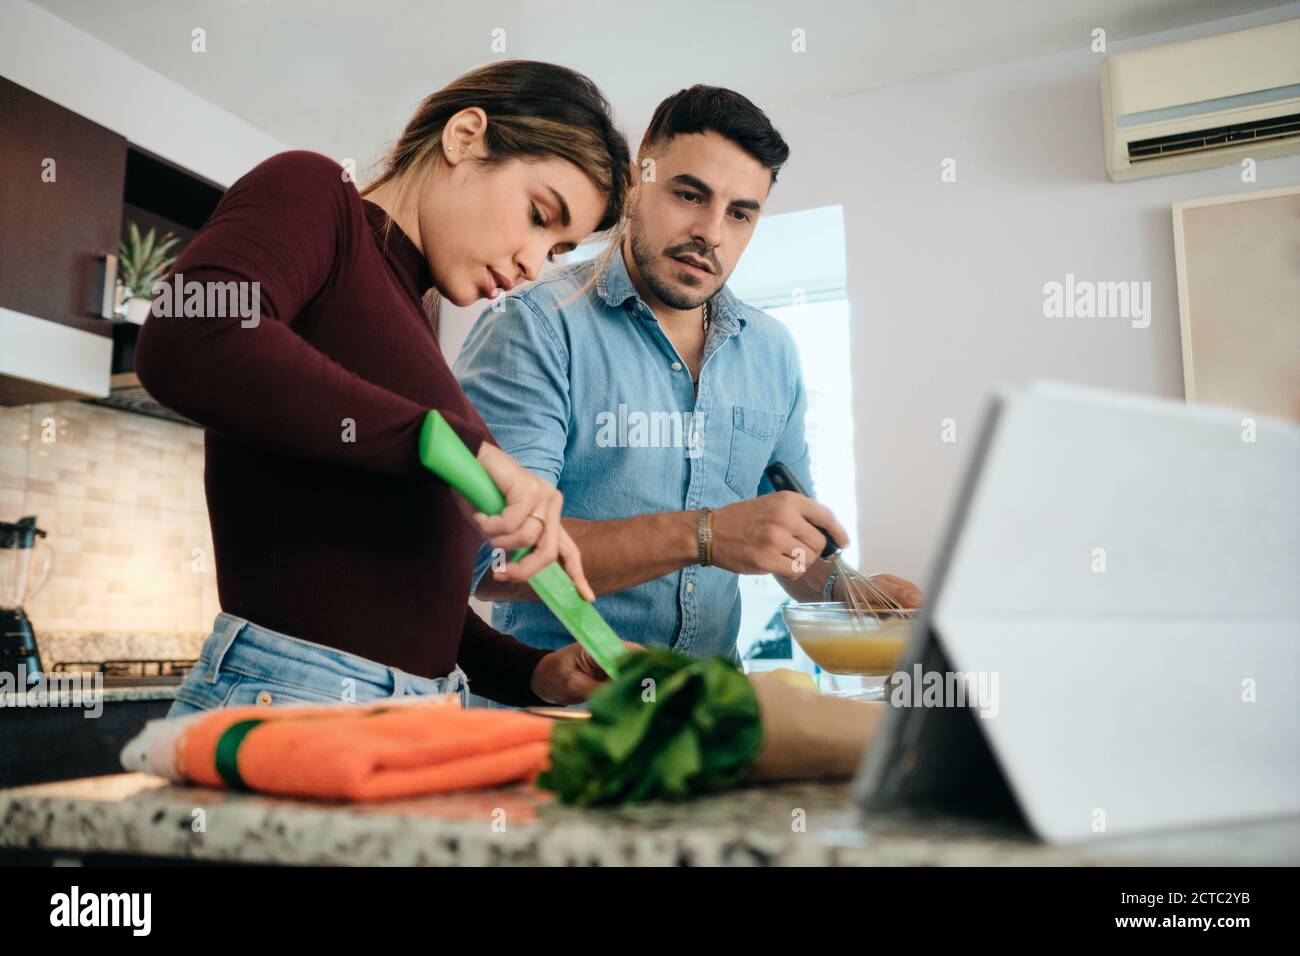 Pareja cocinando juntos observando Tutorial para Receta Foto de stock